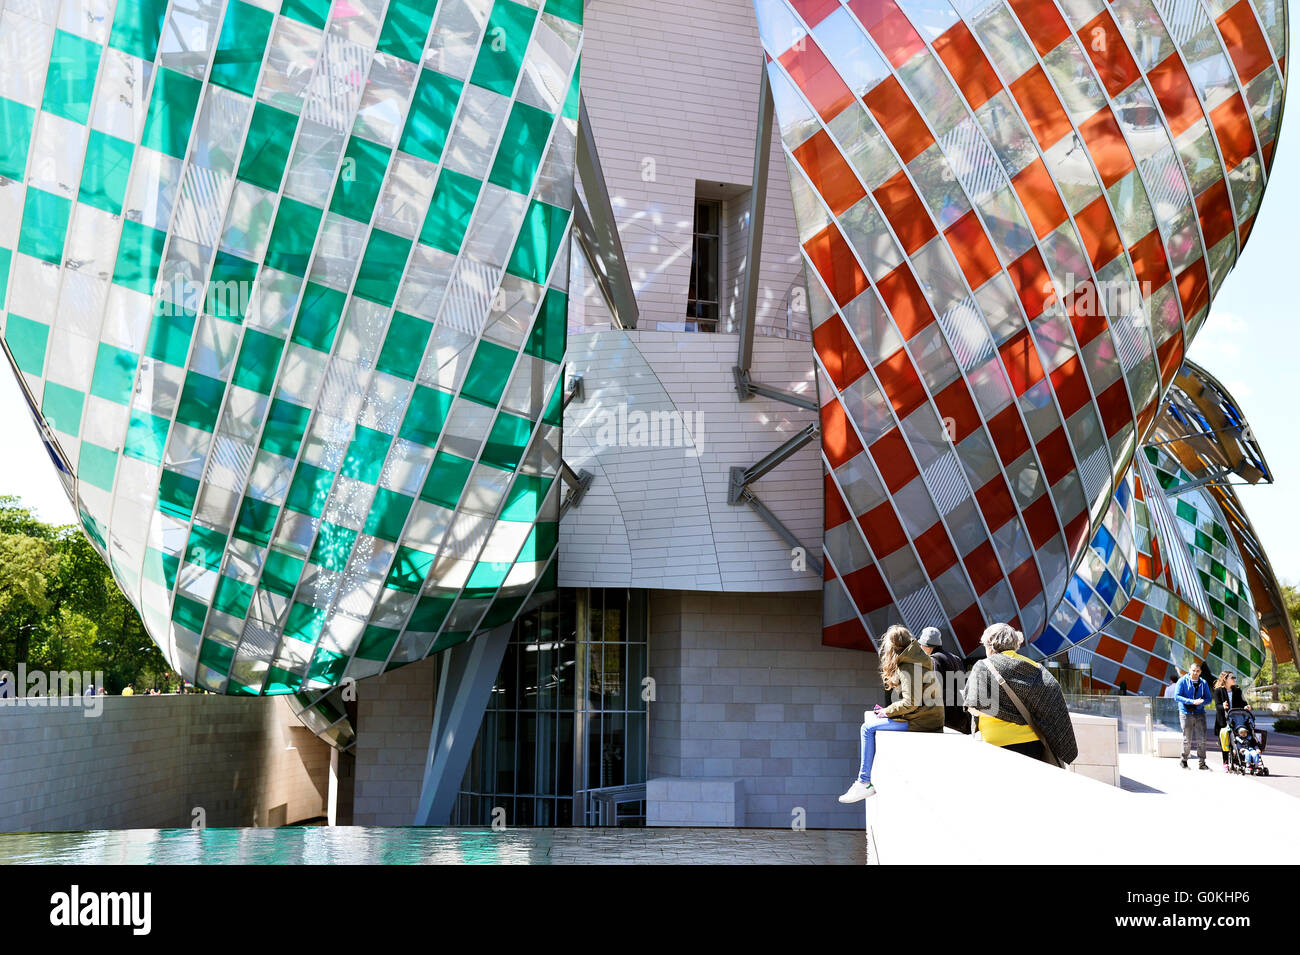 Daniel Buren colora la Fondation Louis Vuitton di Parigi. Le 3600